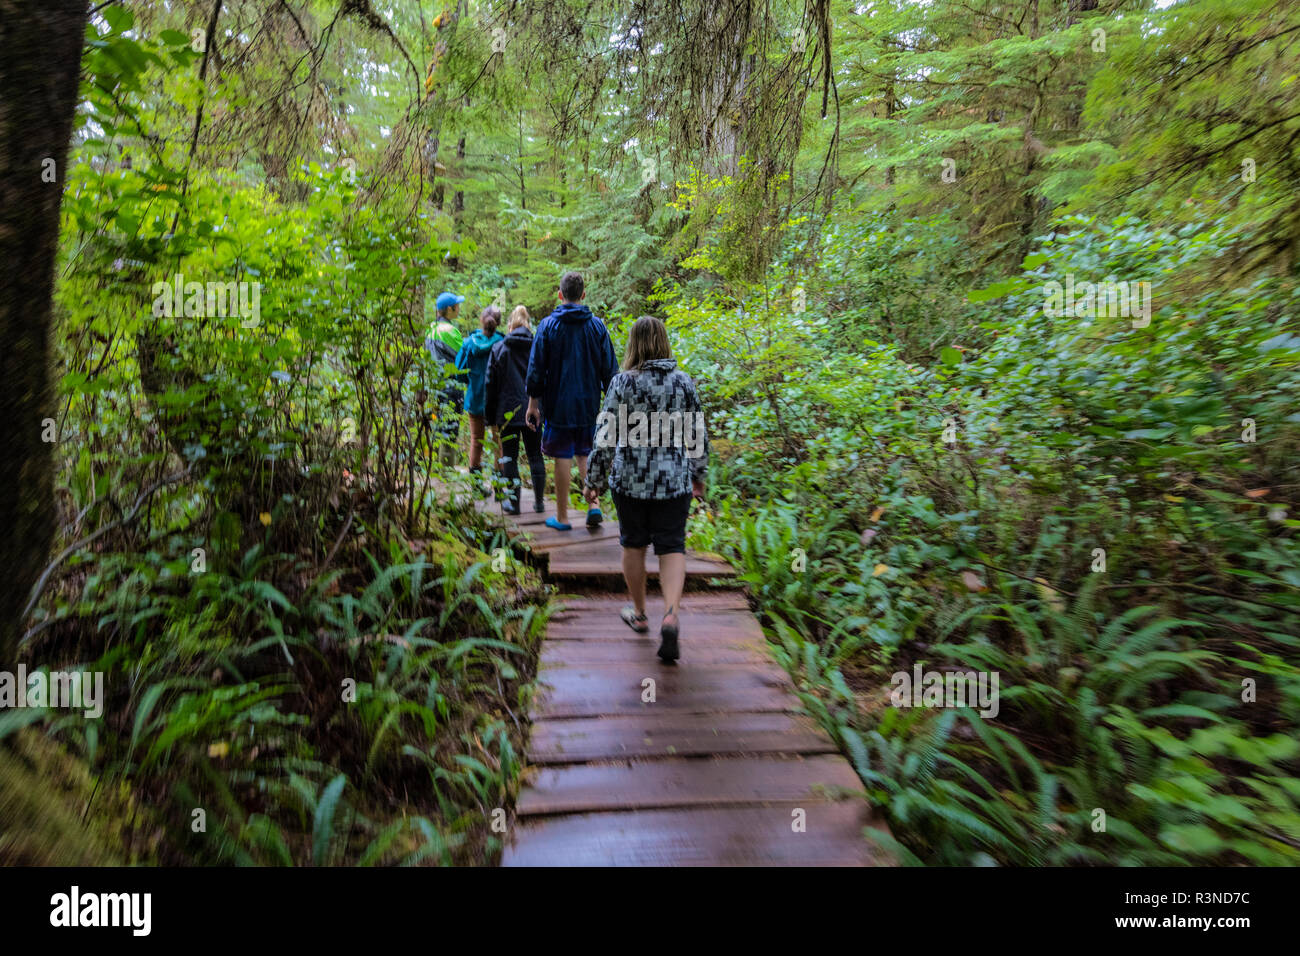 Randonnées sur planche de cèdre boardwalk à travers les vieux peuplements de forêt de cèdres sur Mearles Island près de Tofino, Colombie-Britannique, Canada (M.) Banque D'Images